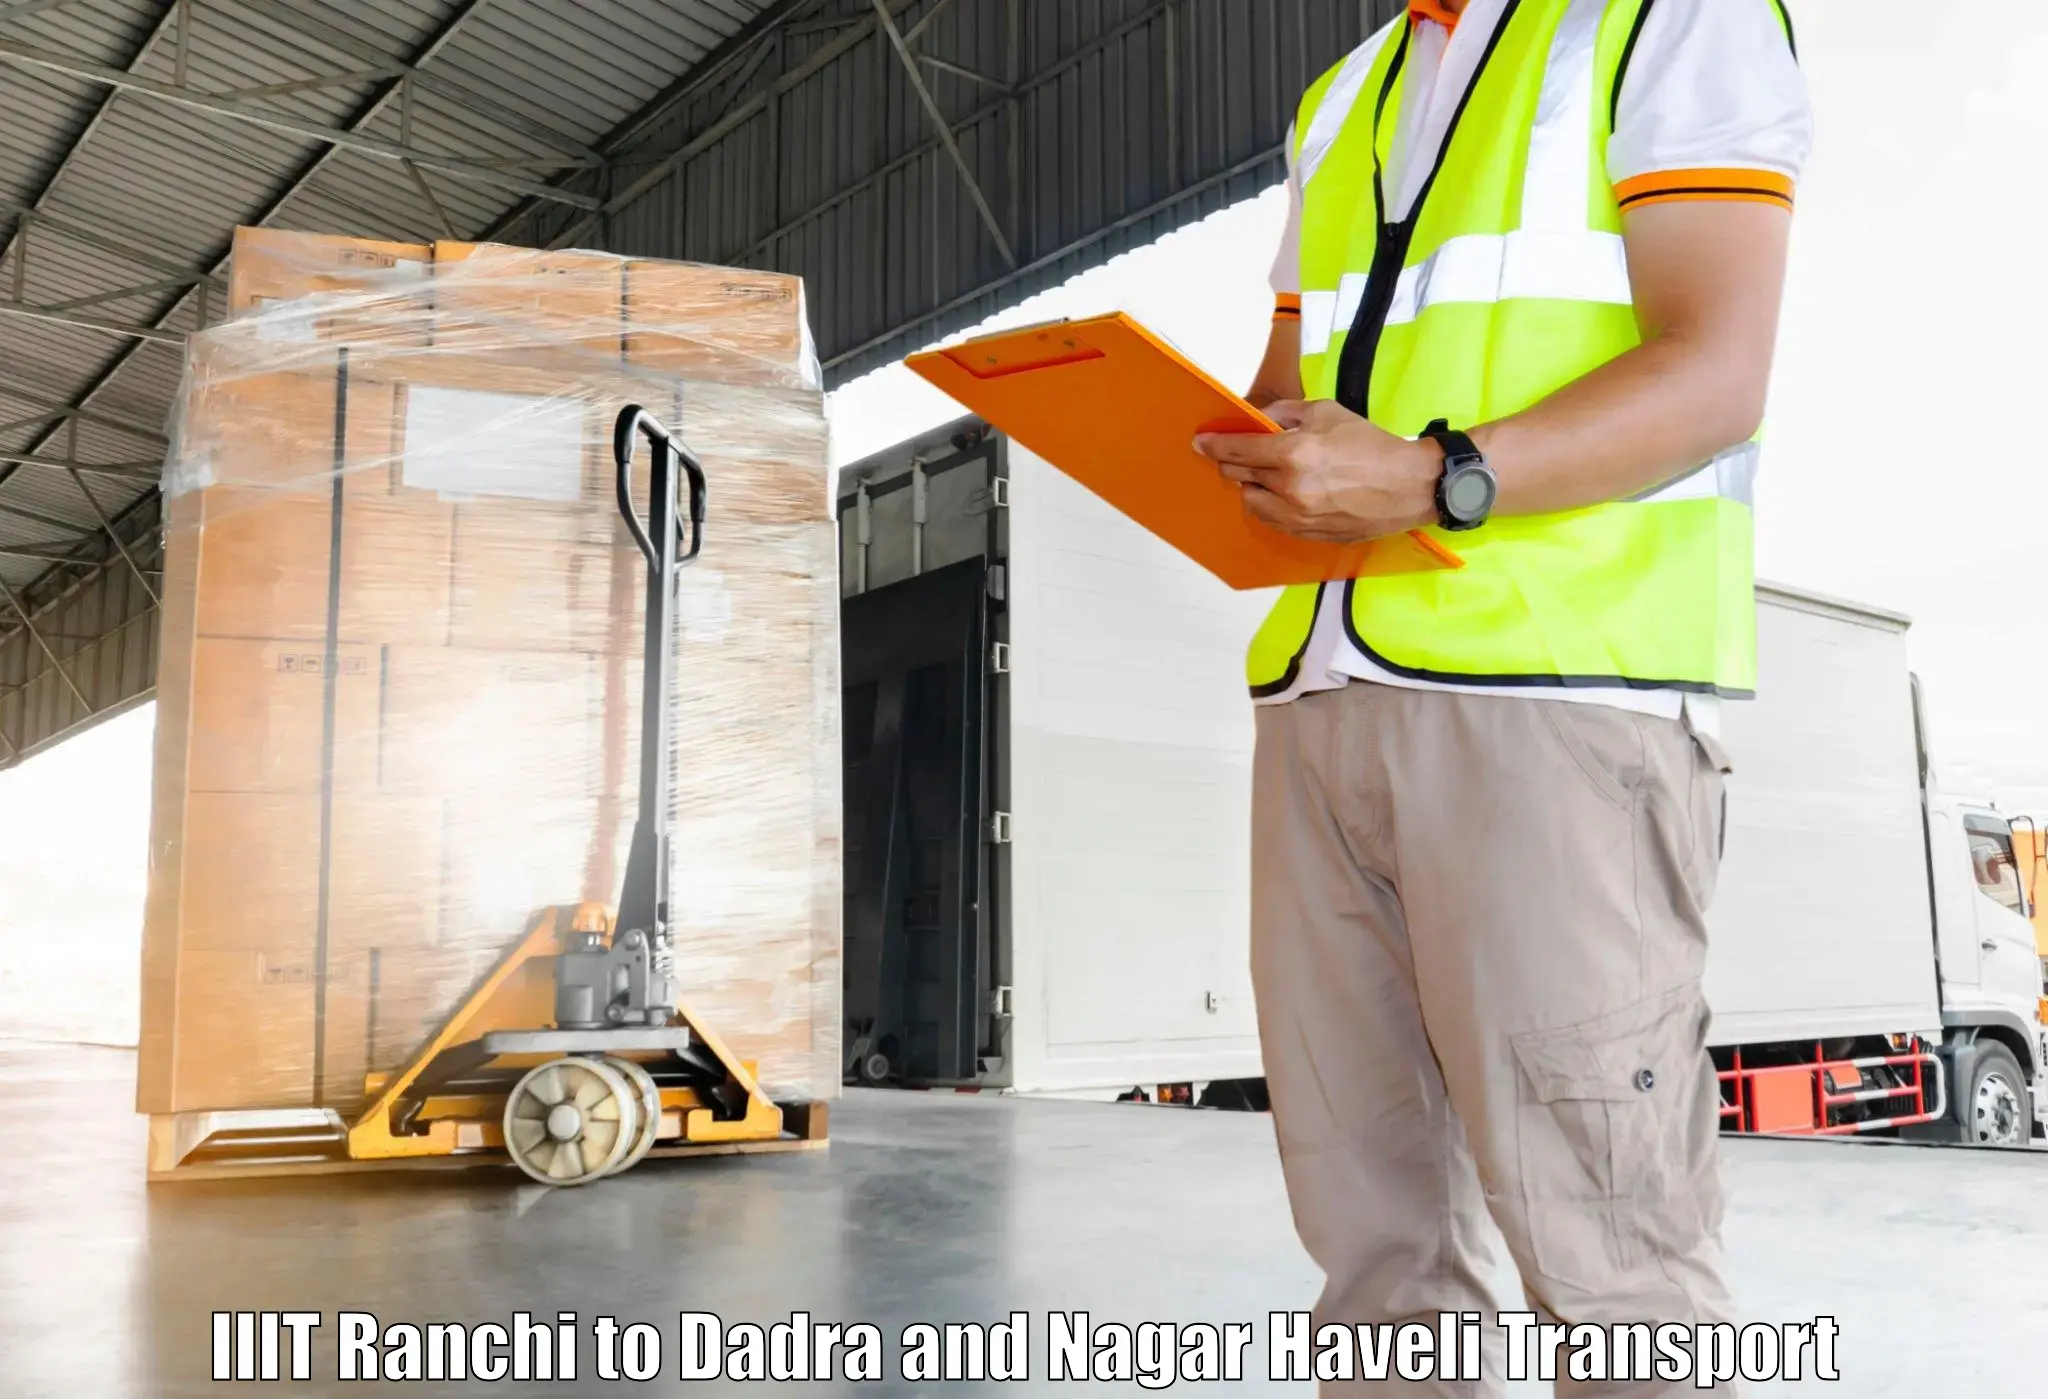 Land transport services IIIT Ranchi to Silvassa